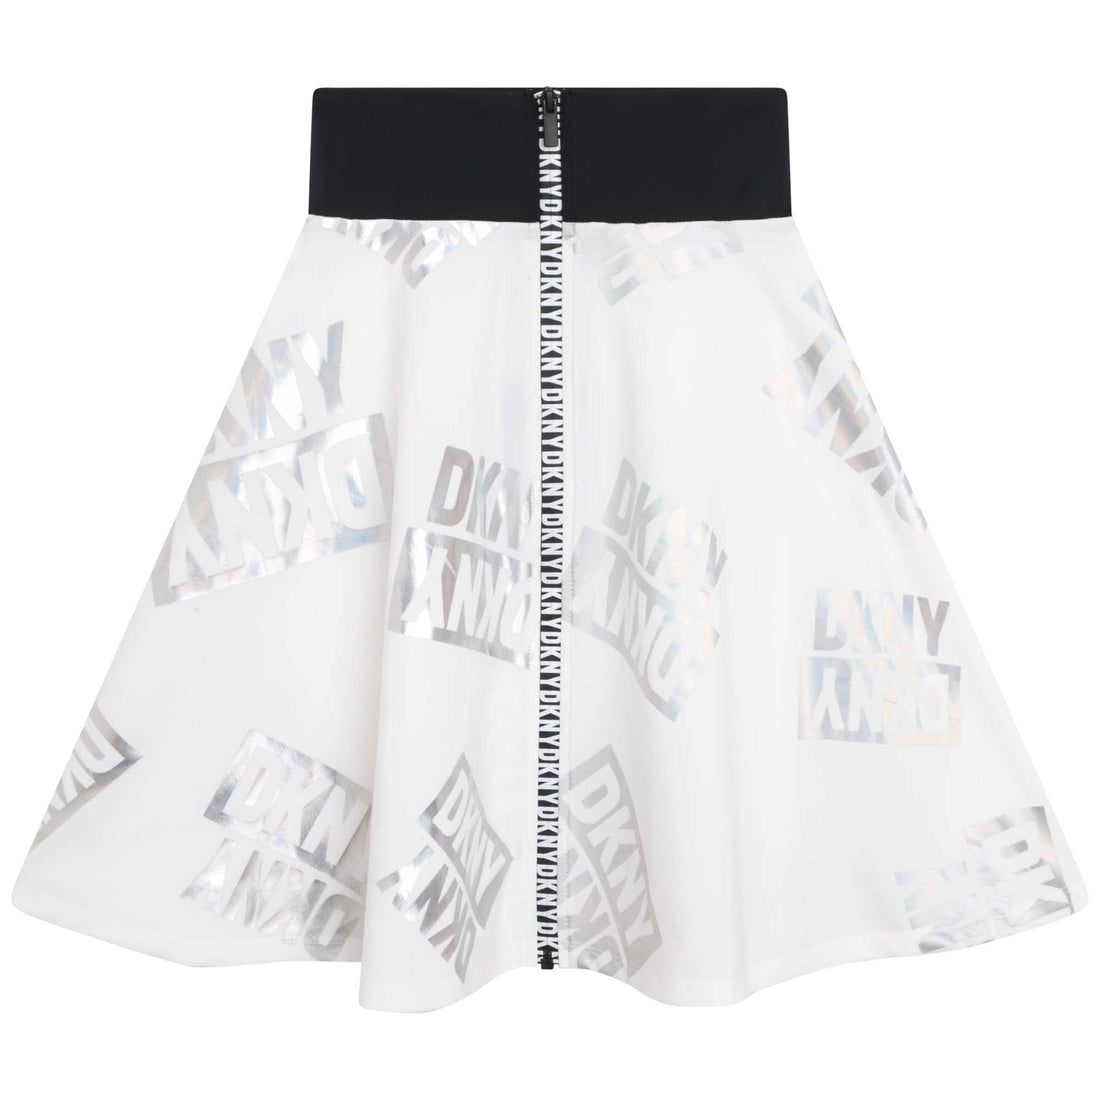 DKNY Long Skirt Style: D33609